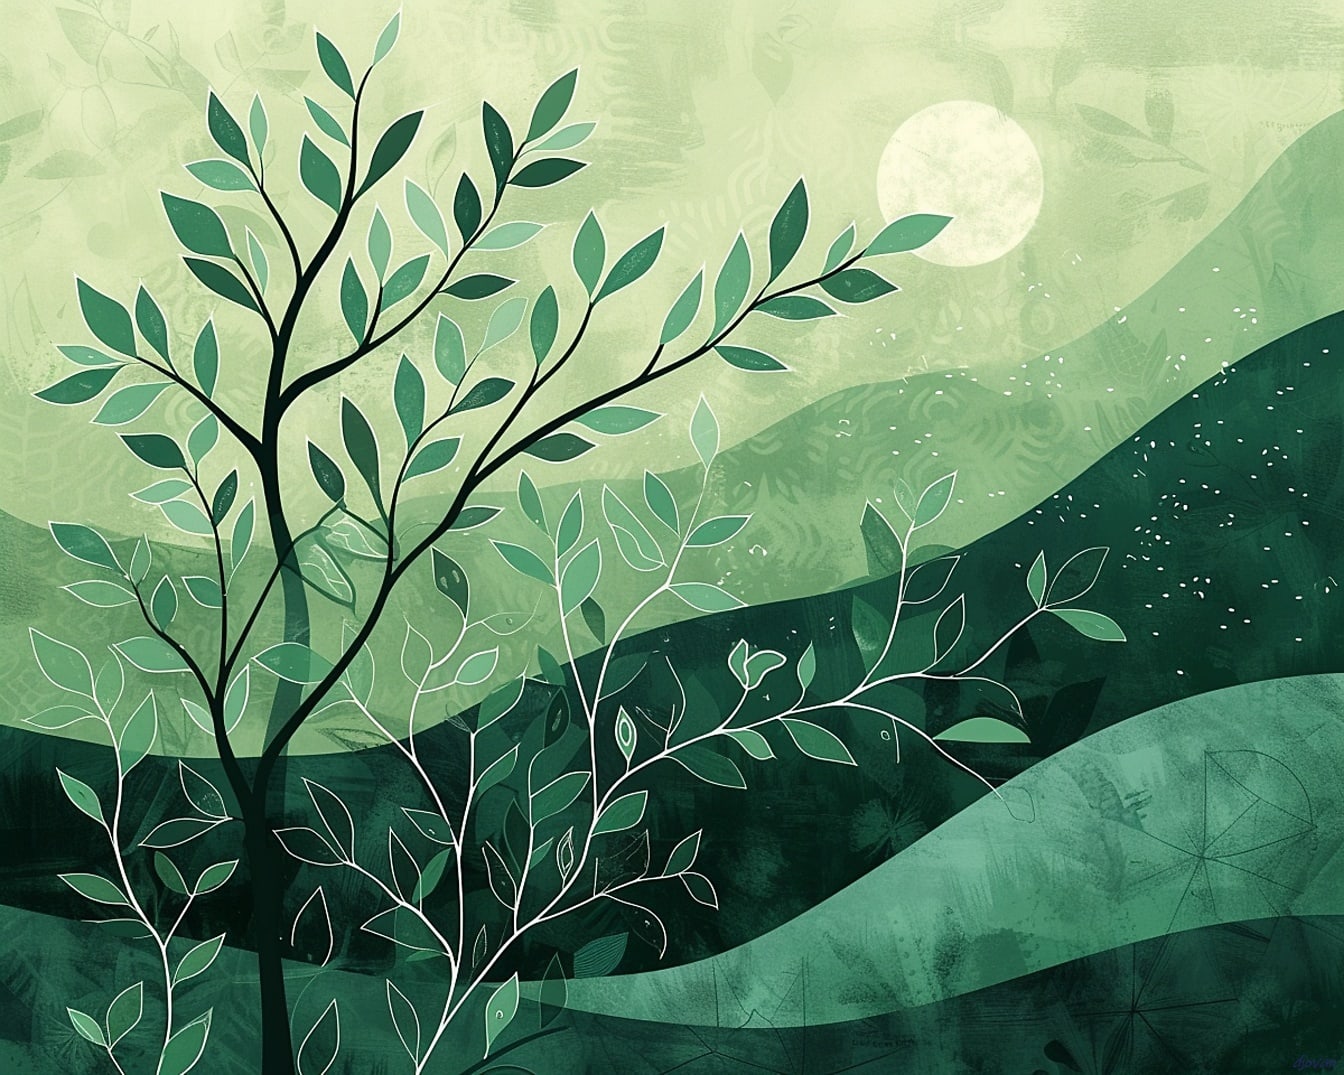 Abstraction artistique d’un arbre avec des feuilles et une lune sur fond verdâtre